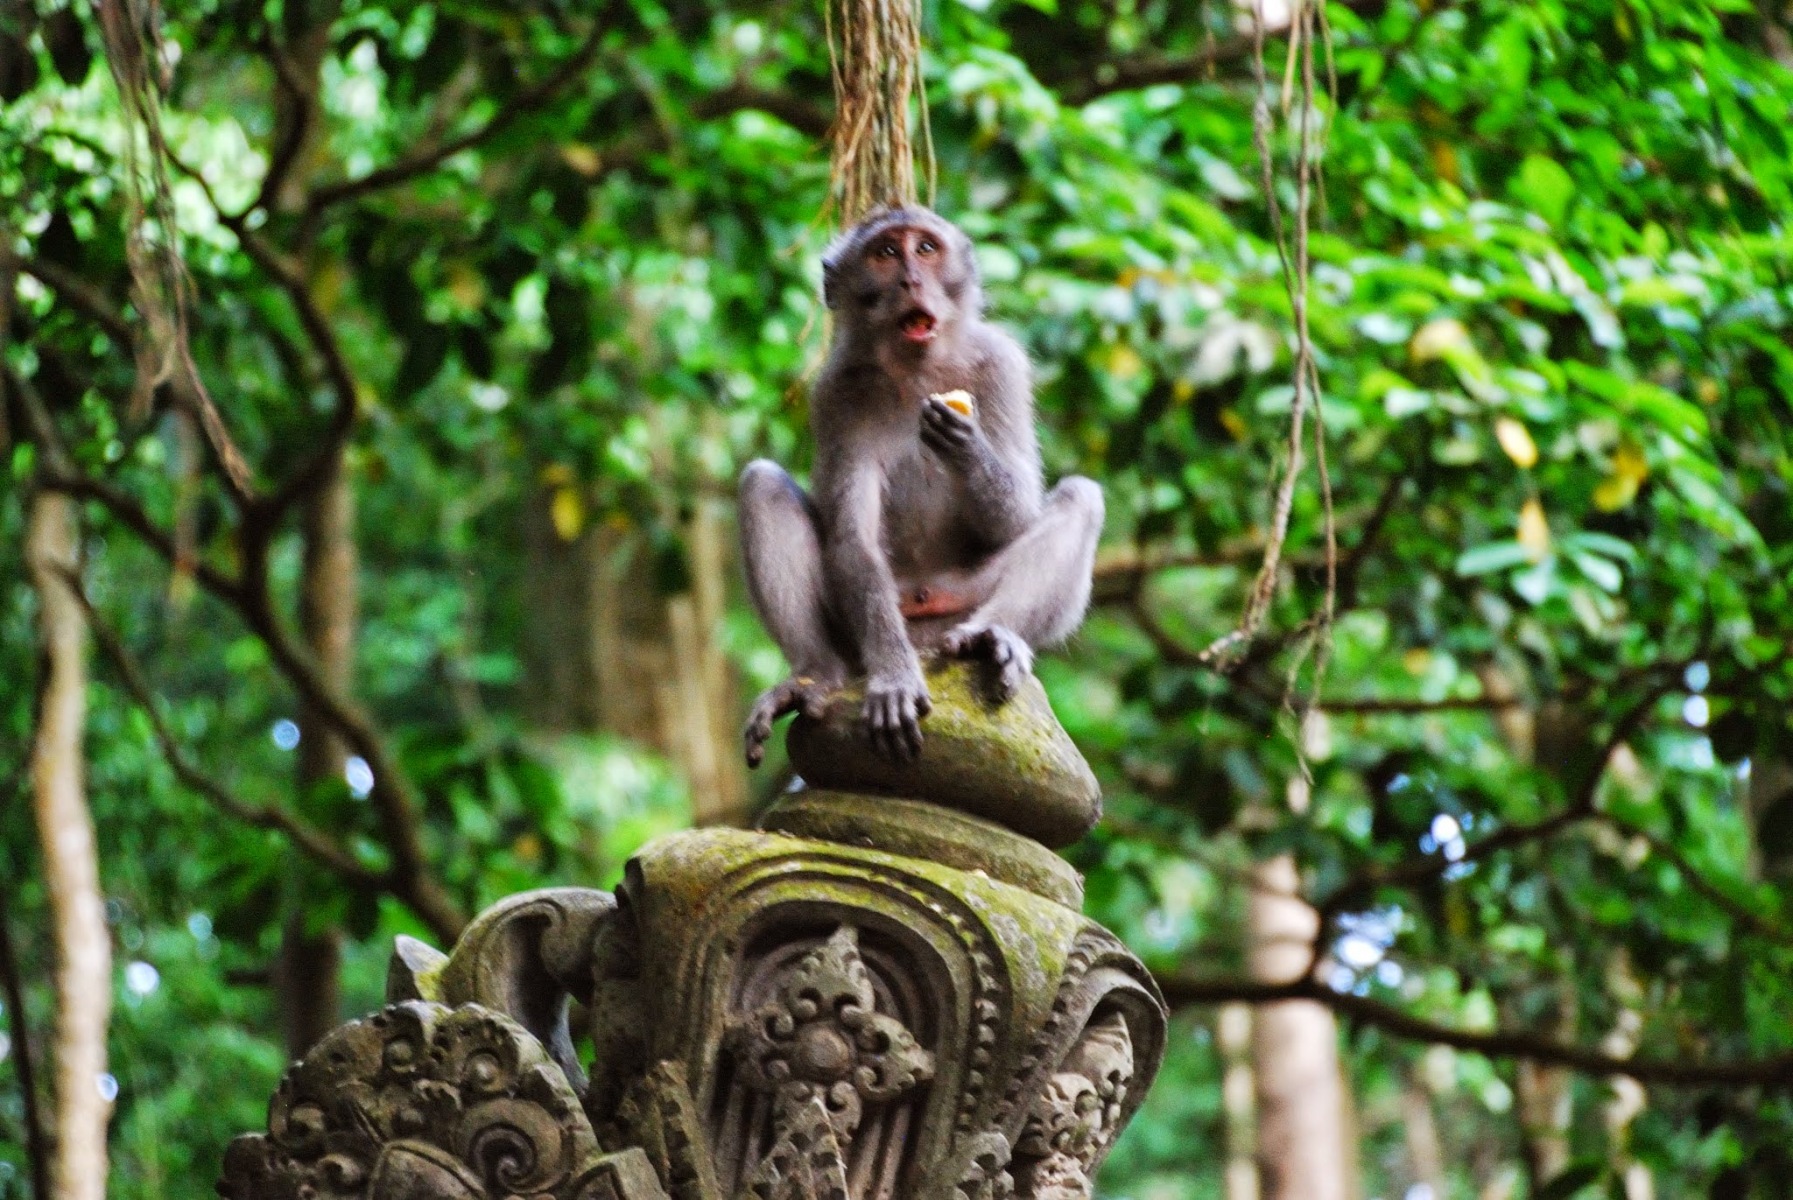 Bali - Ubud - Monkey forest